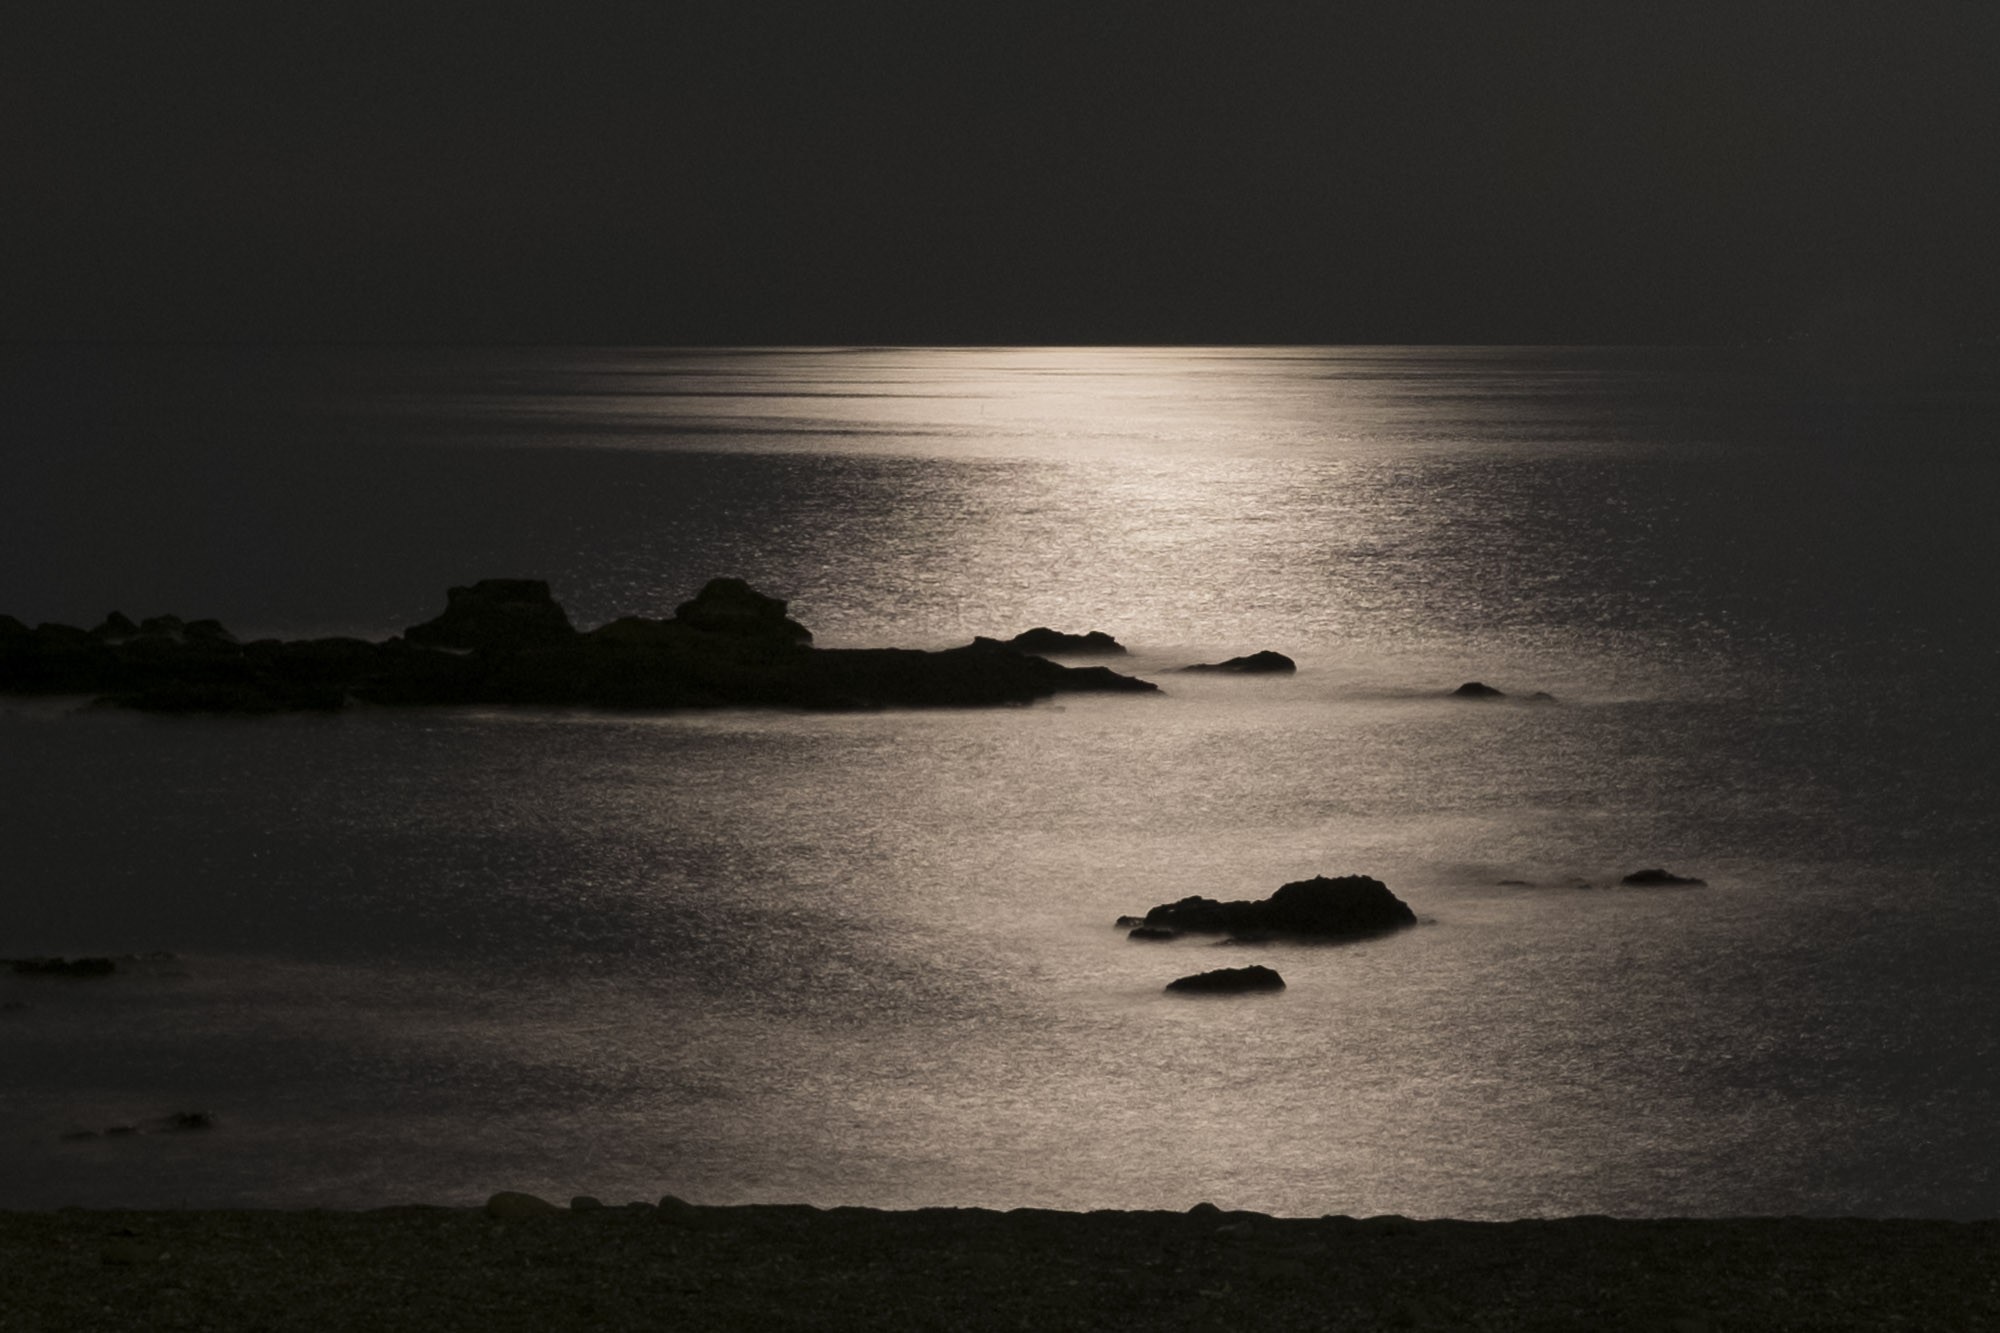 月夜の海のきらめき 月明かりが反射してキラキラと輝く海 フリー写真有 イメージガレージ